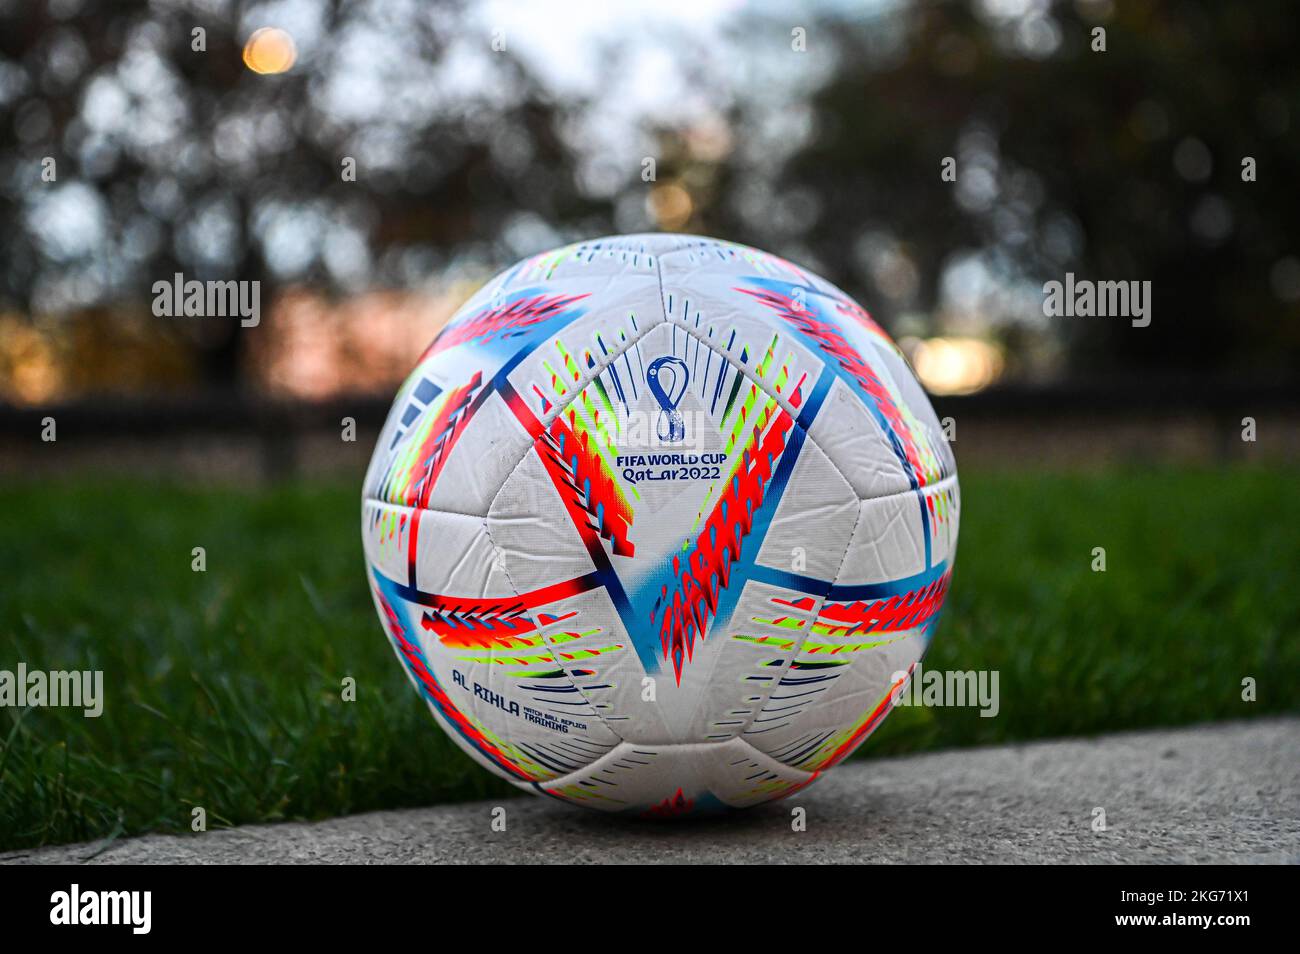 Milano, Italia - Novembre 20: La palla ufficiale chiamata ‘al Rihlaa’ da Adidas, la palla Qatar World Cup 2022 Foto Stock